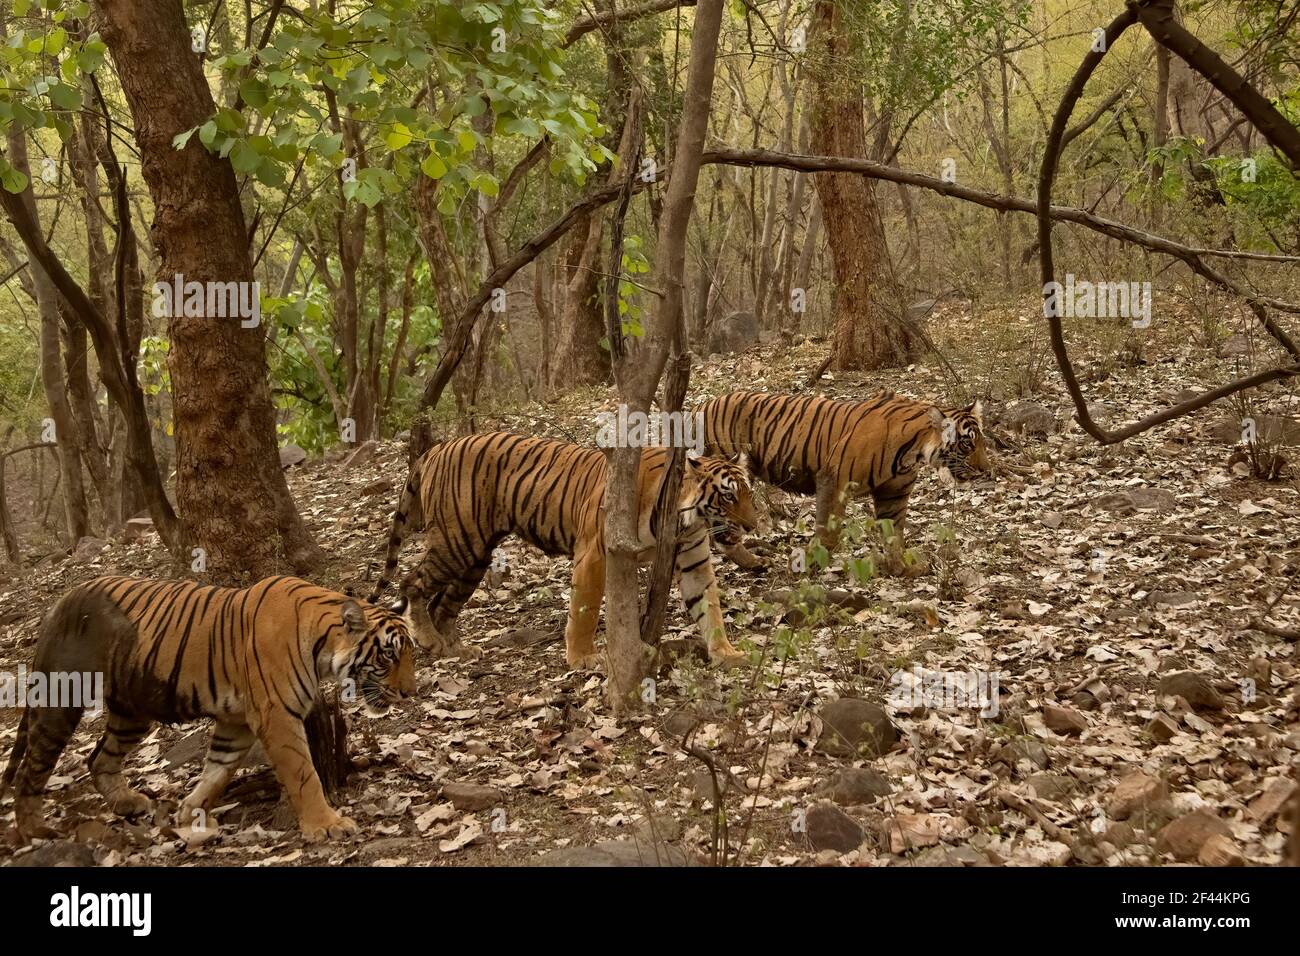 Drei Tiger, eine Mutter und zwei fast ausgewachsene Jungen, die während der Monsunsaison in Indien in den grünen Wäldern von Ranthambhore wandern Stockfoto